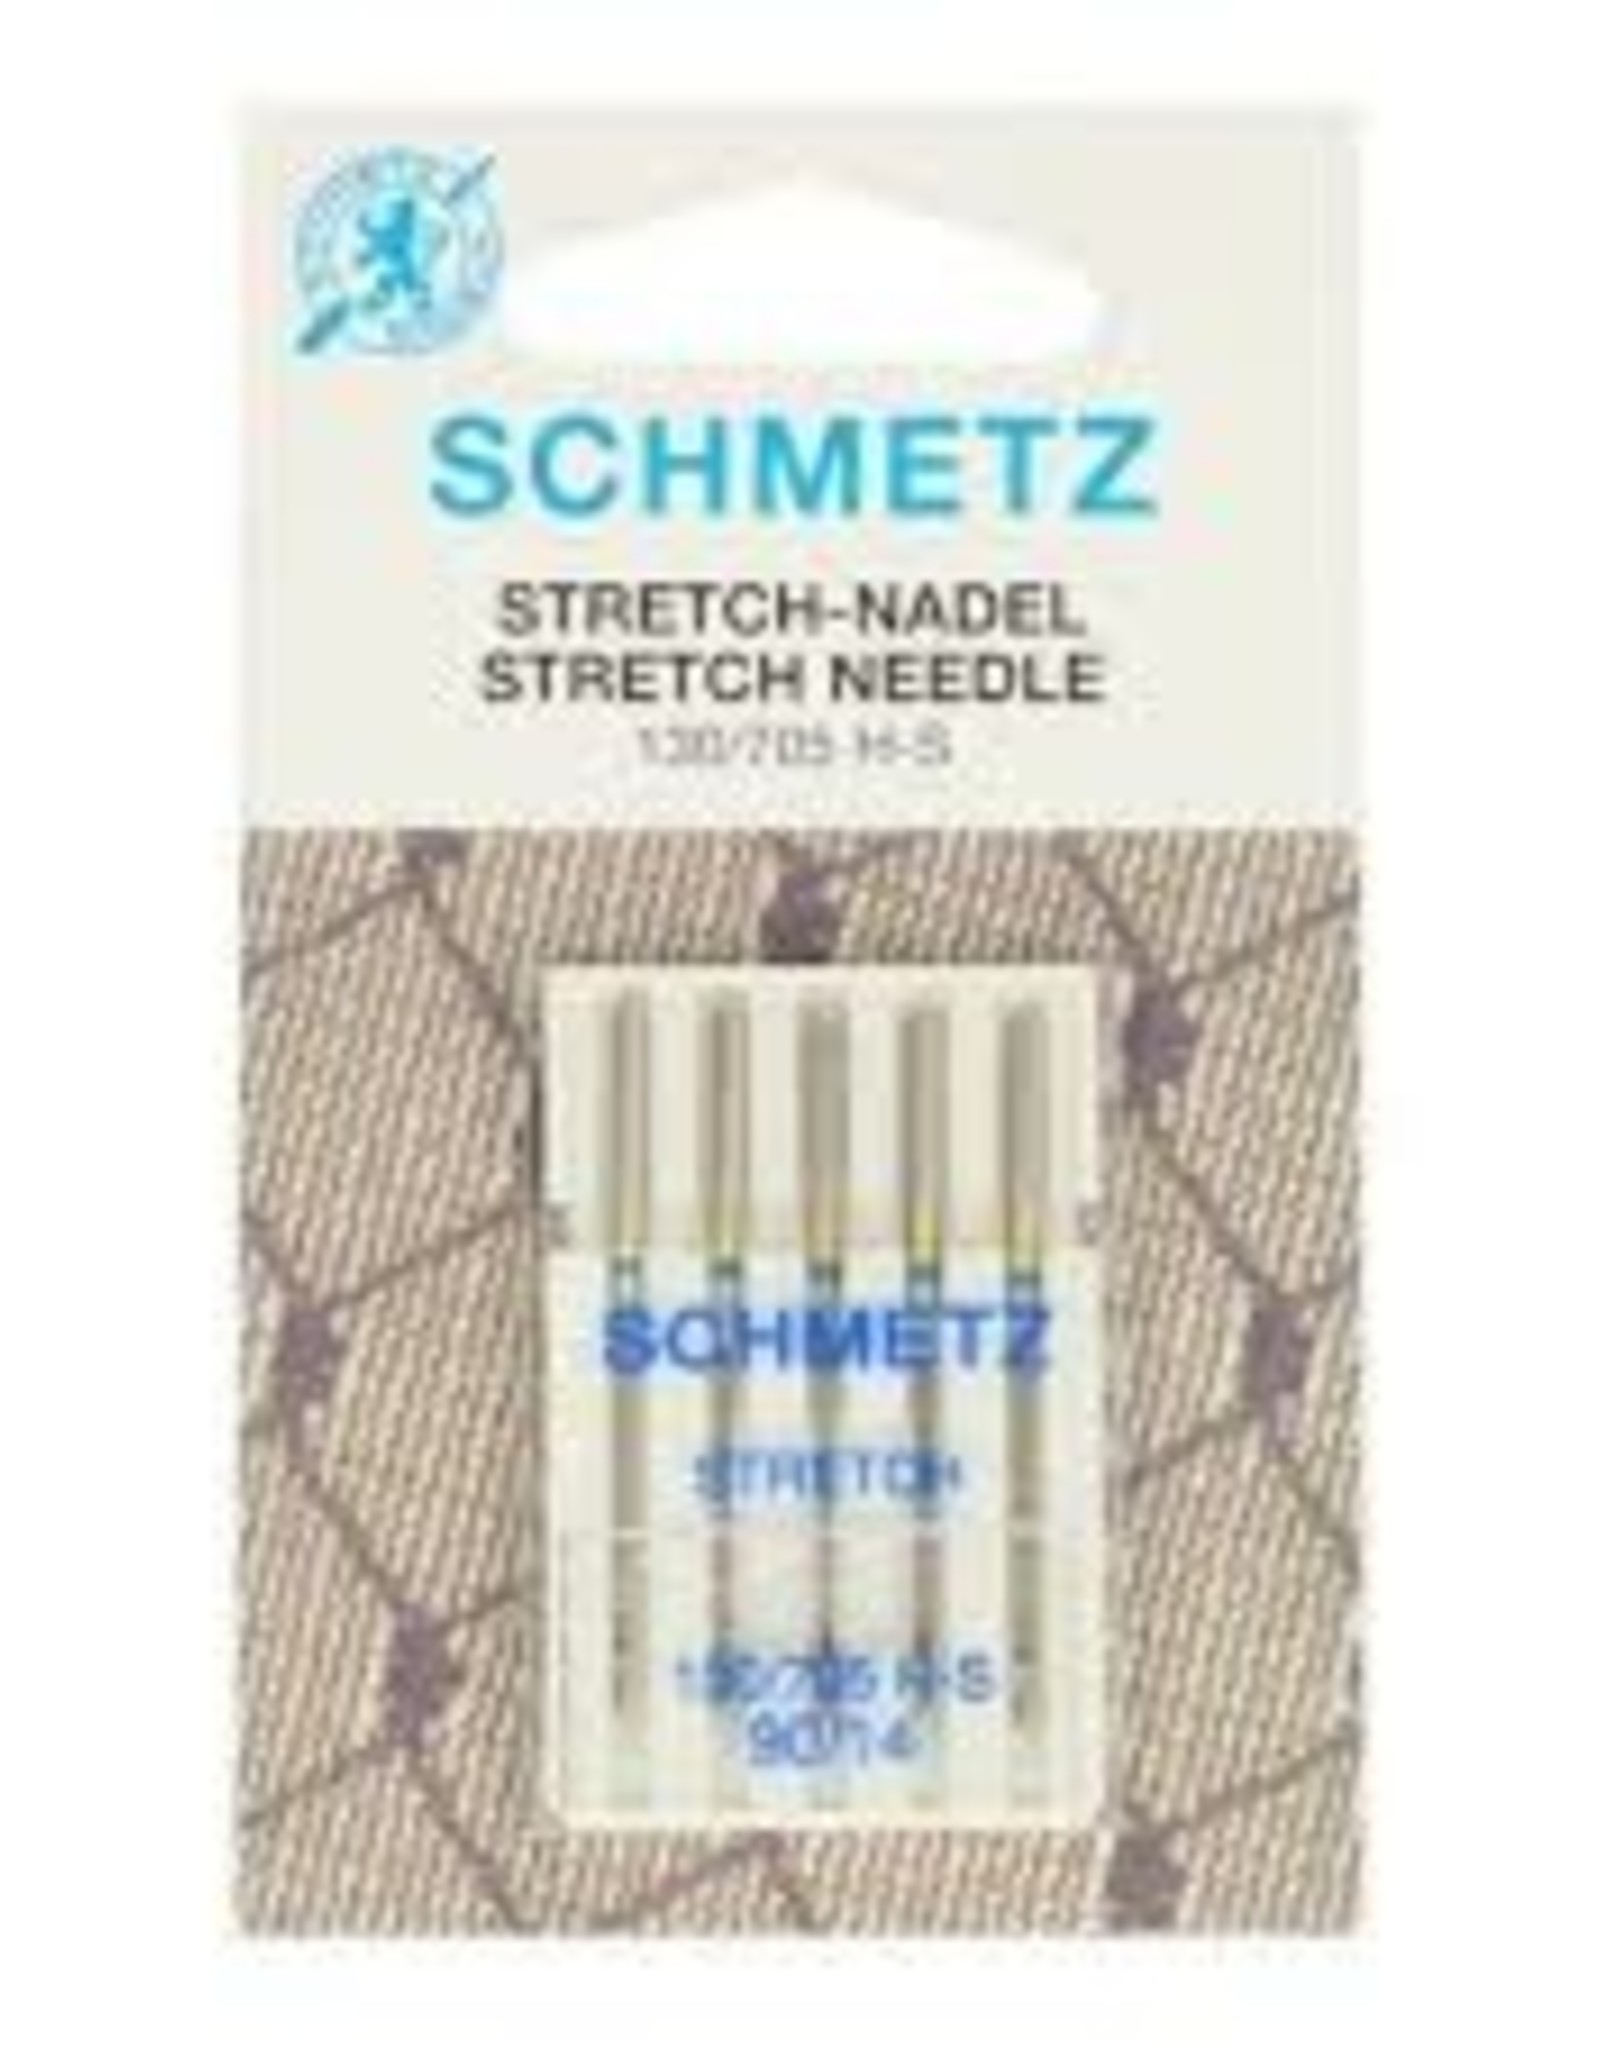 schmetz schmetz stretch  90/14